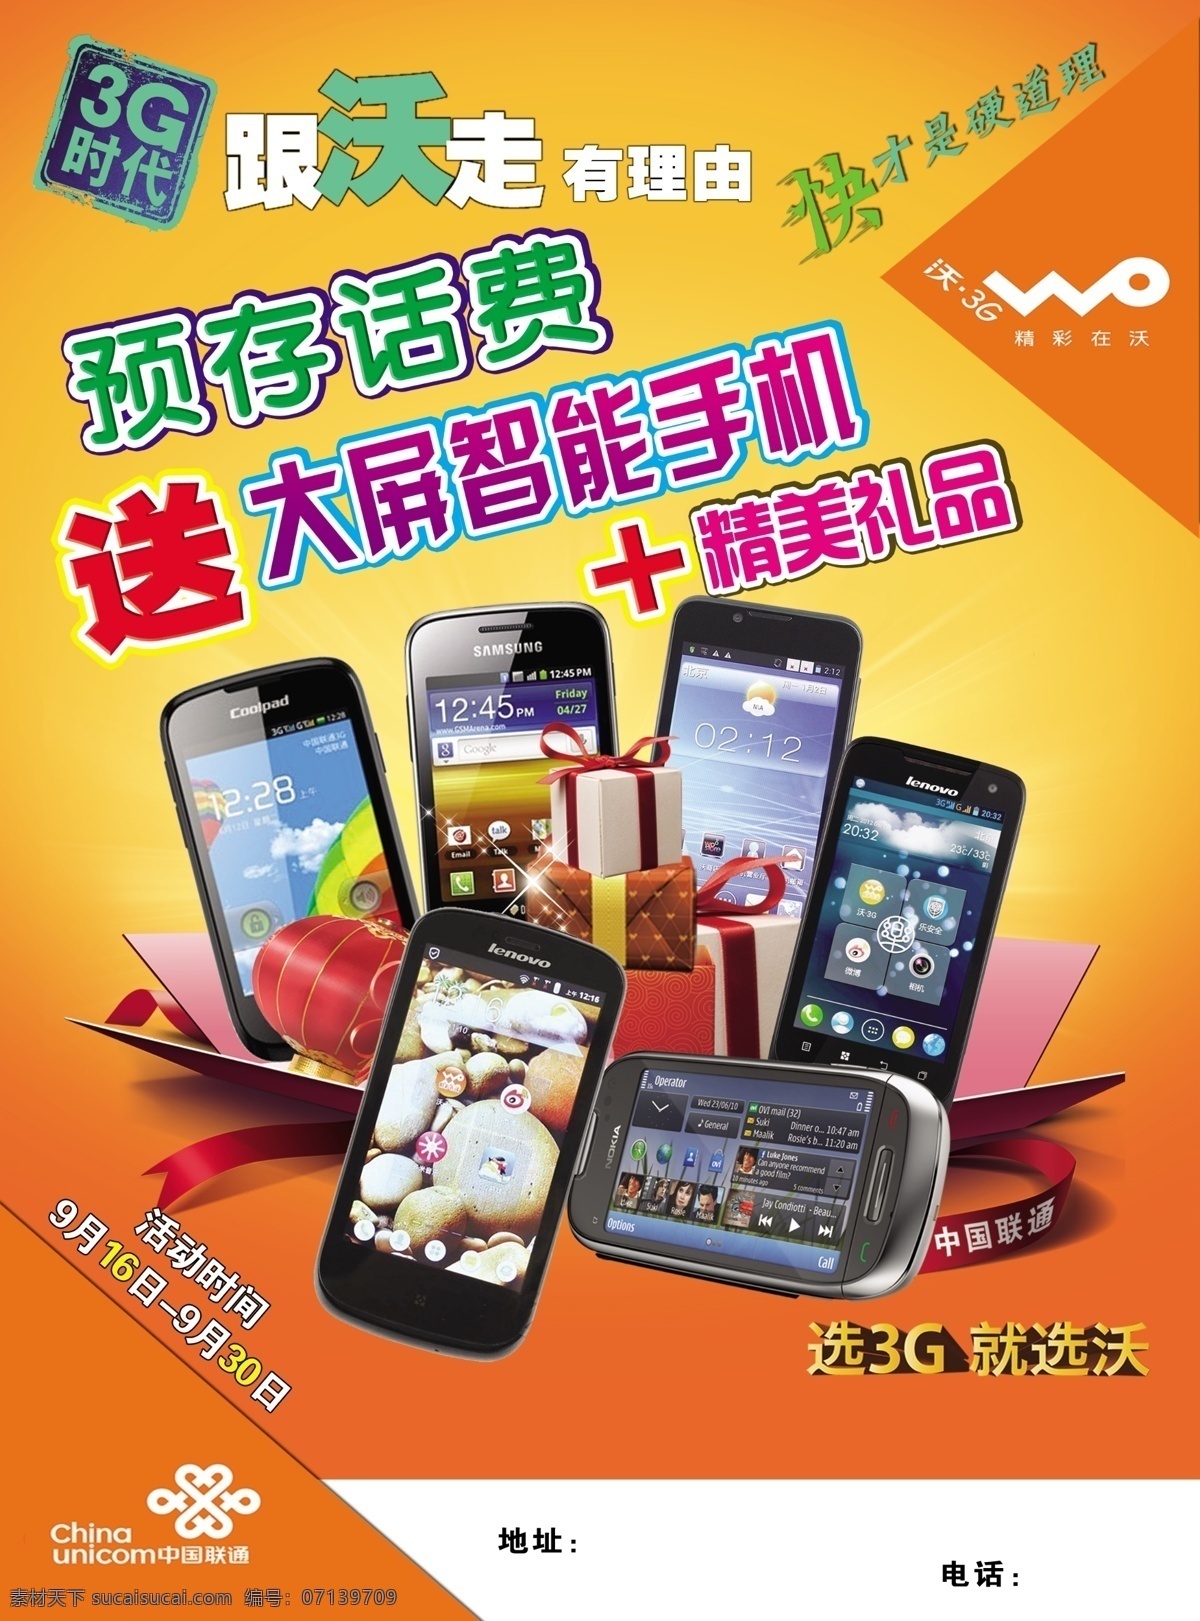 中国联通 广告设计模板 礼品 联通 手机 源文件 智能手机 千元智能手机 跟沃走 其他海报设计